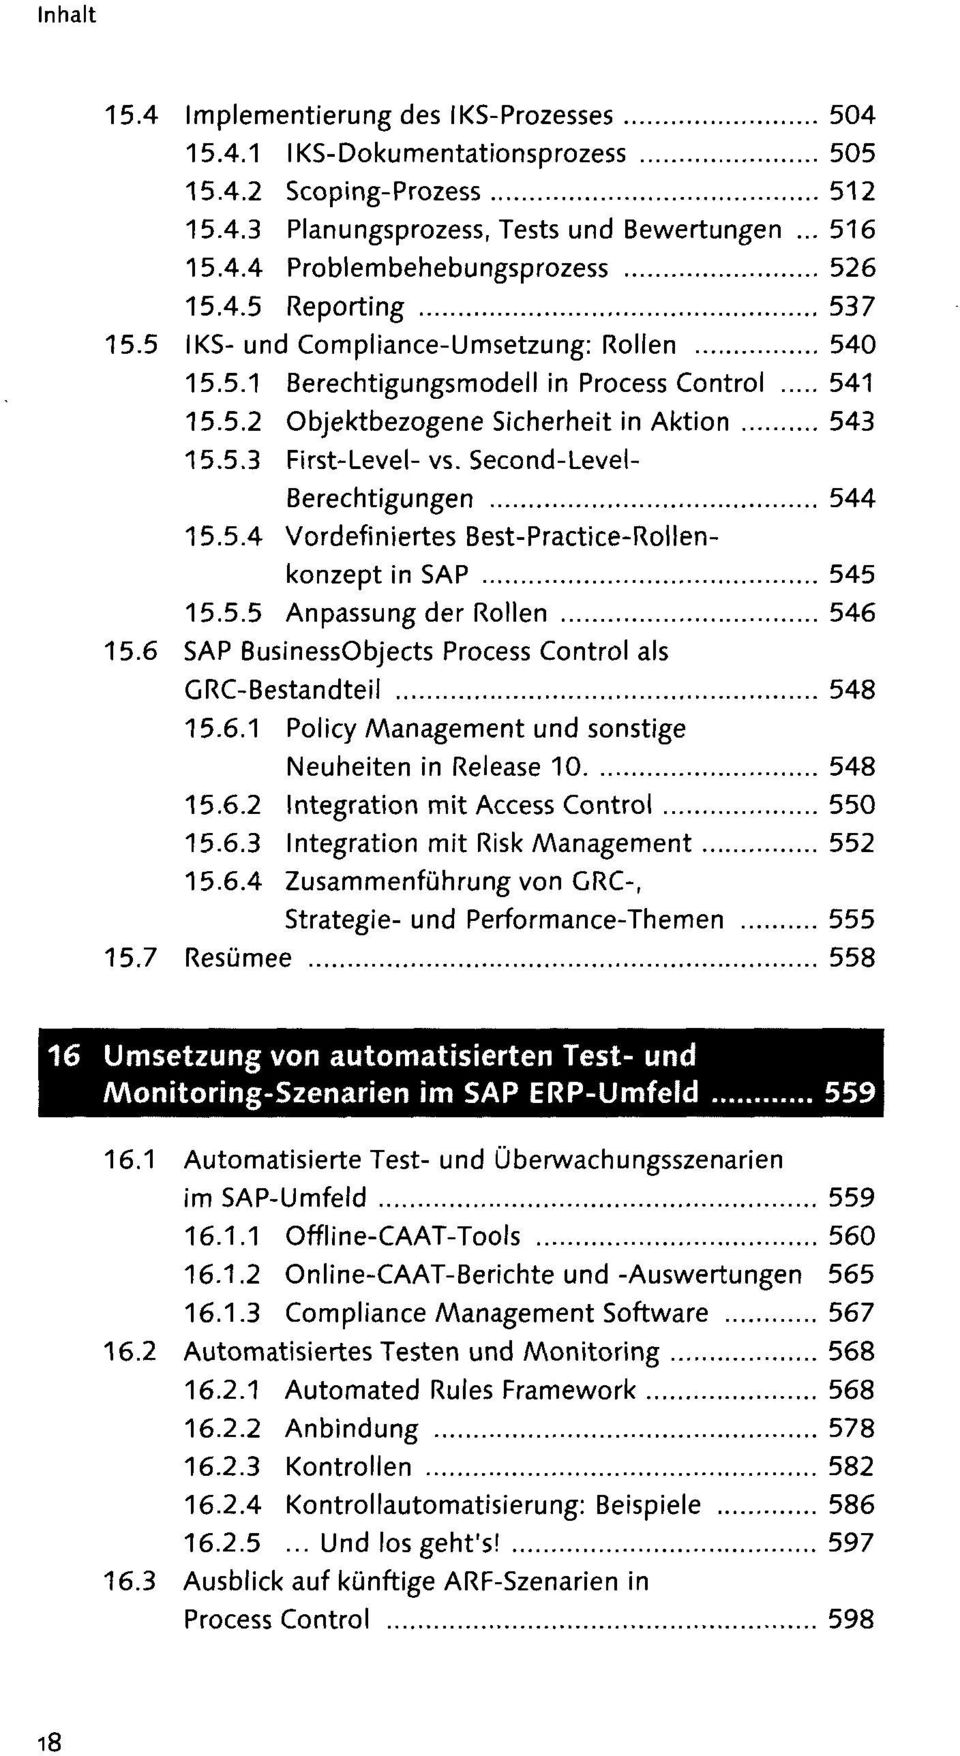 5.4 Vordefiniertes Best-Practice-Rollenkonzept in SAP 545 15.5.5 Anpassung der Rollen 546 15.6 SAP BusinessObjects Process Control als GRC-Bestandteil 548 15.6.1 Policy Management und sonstige Neuheiten in Release 10 548 15.